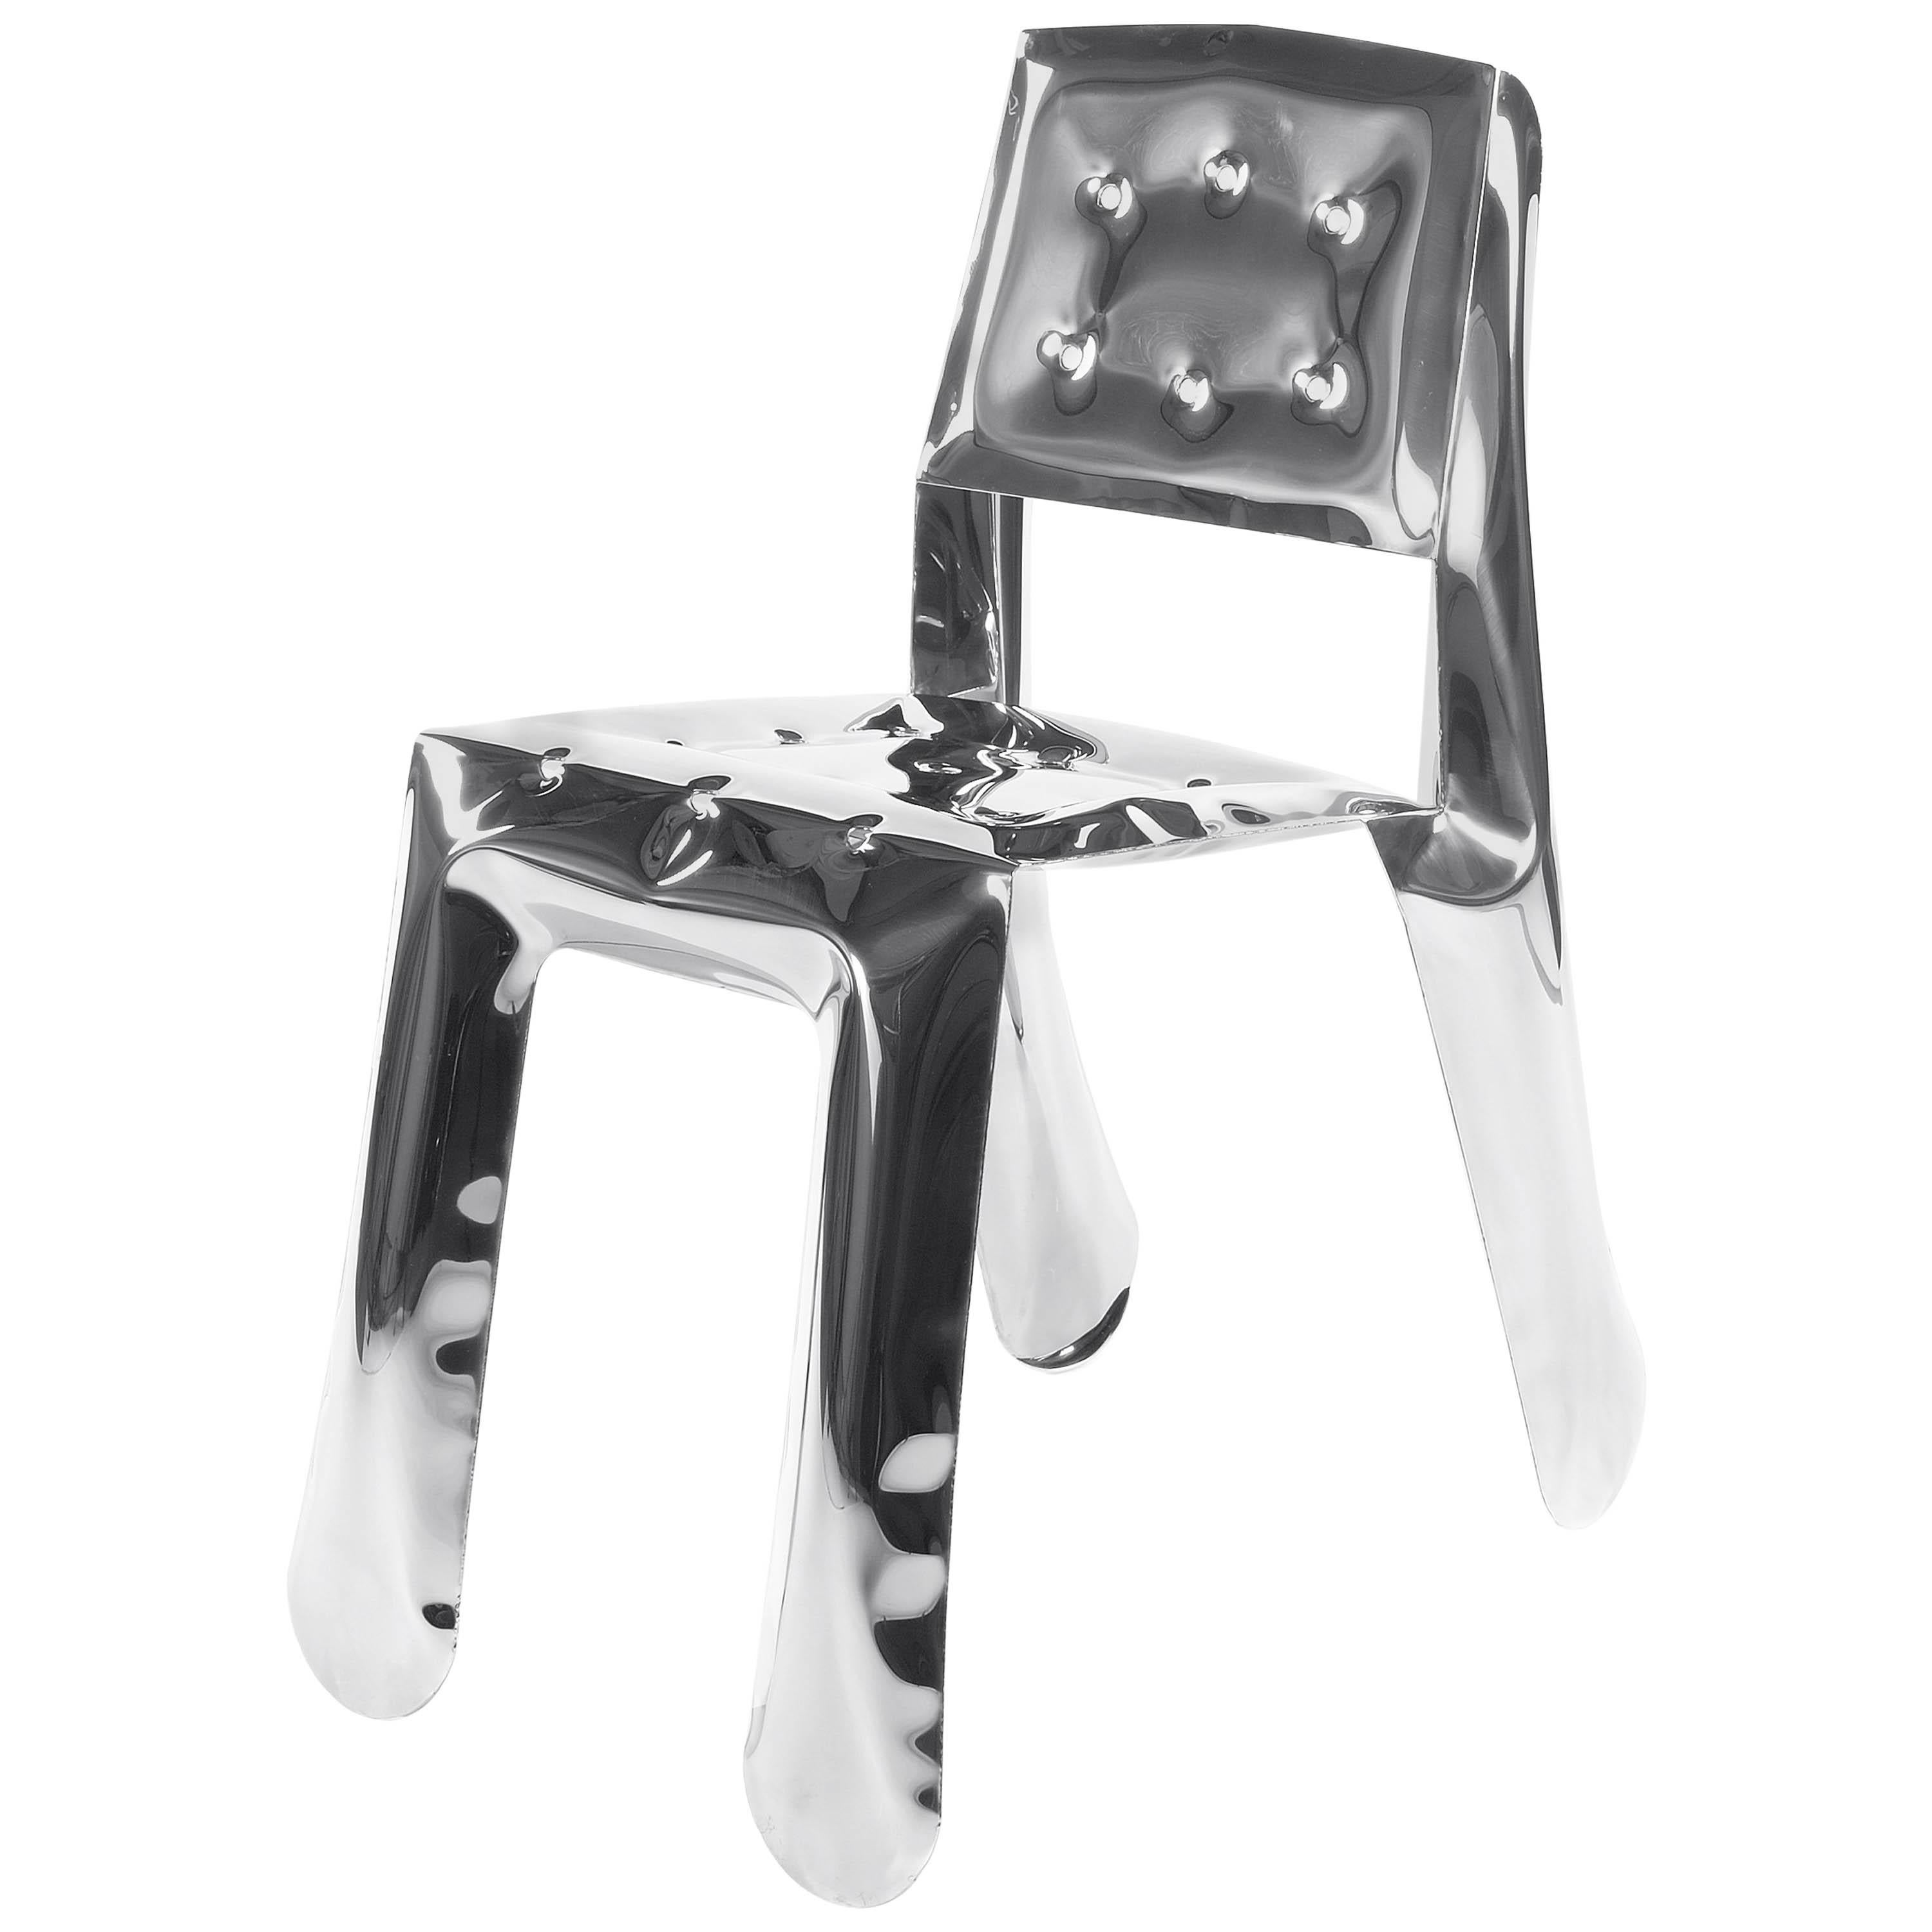 Chaise Chippensteel 0,5 en acier inoxydable poli, édition limitée, par Zieta